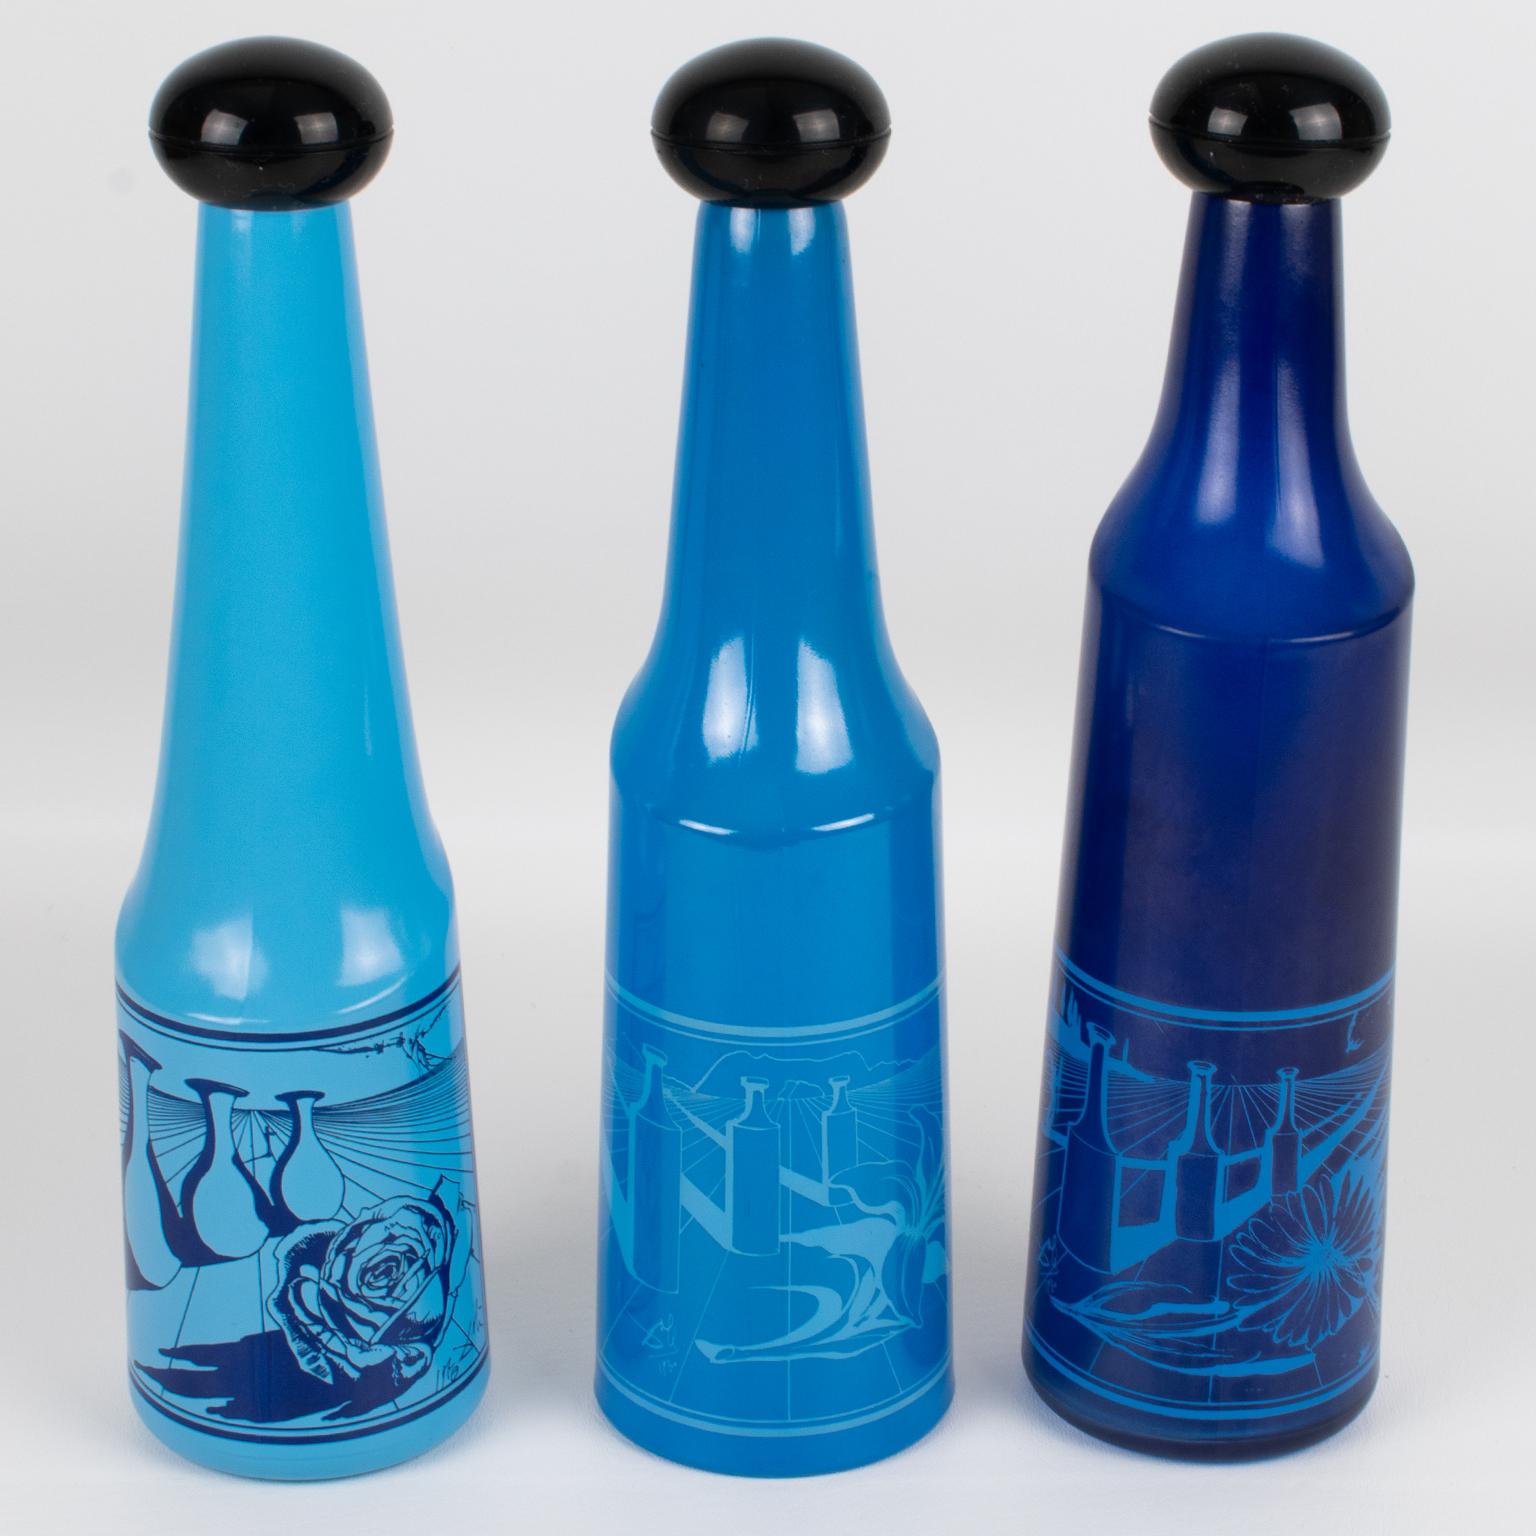 Ce superbe ensemble de trois bouteilles en verre coloré a été conçu par Salvador Dali (1904 - 1989) pour Rosso Antico, Ltd, Italie, dans les années 1970. Ces bouteilles de spiritueux géométriques sont d'un bleu assorti et les dessins surréalistes de